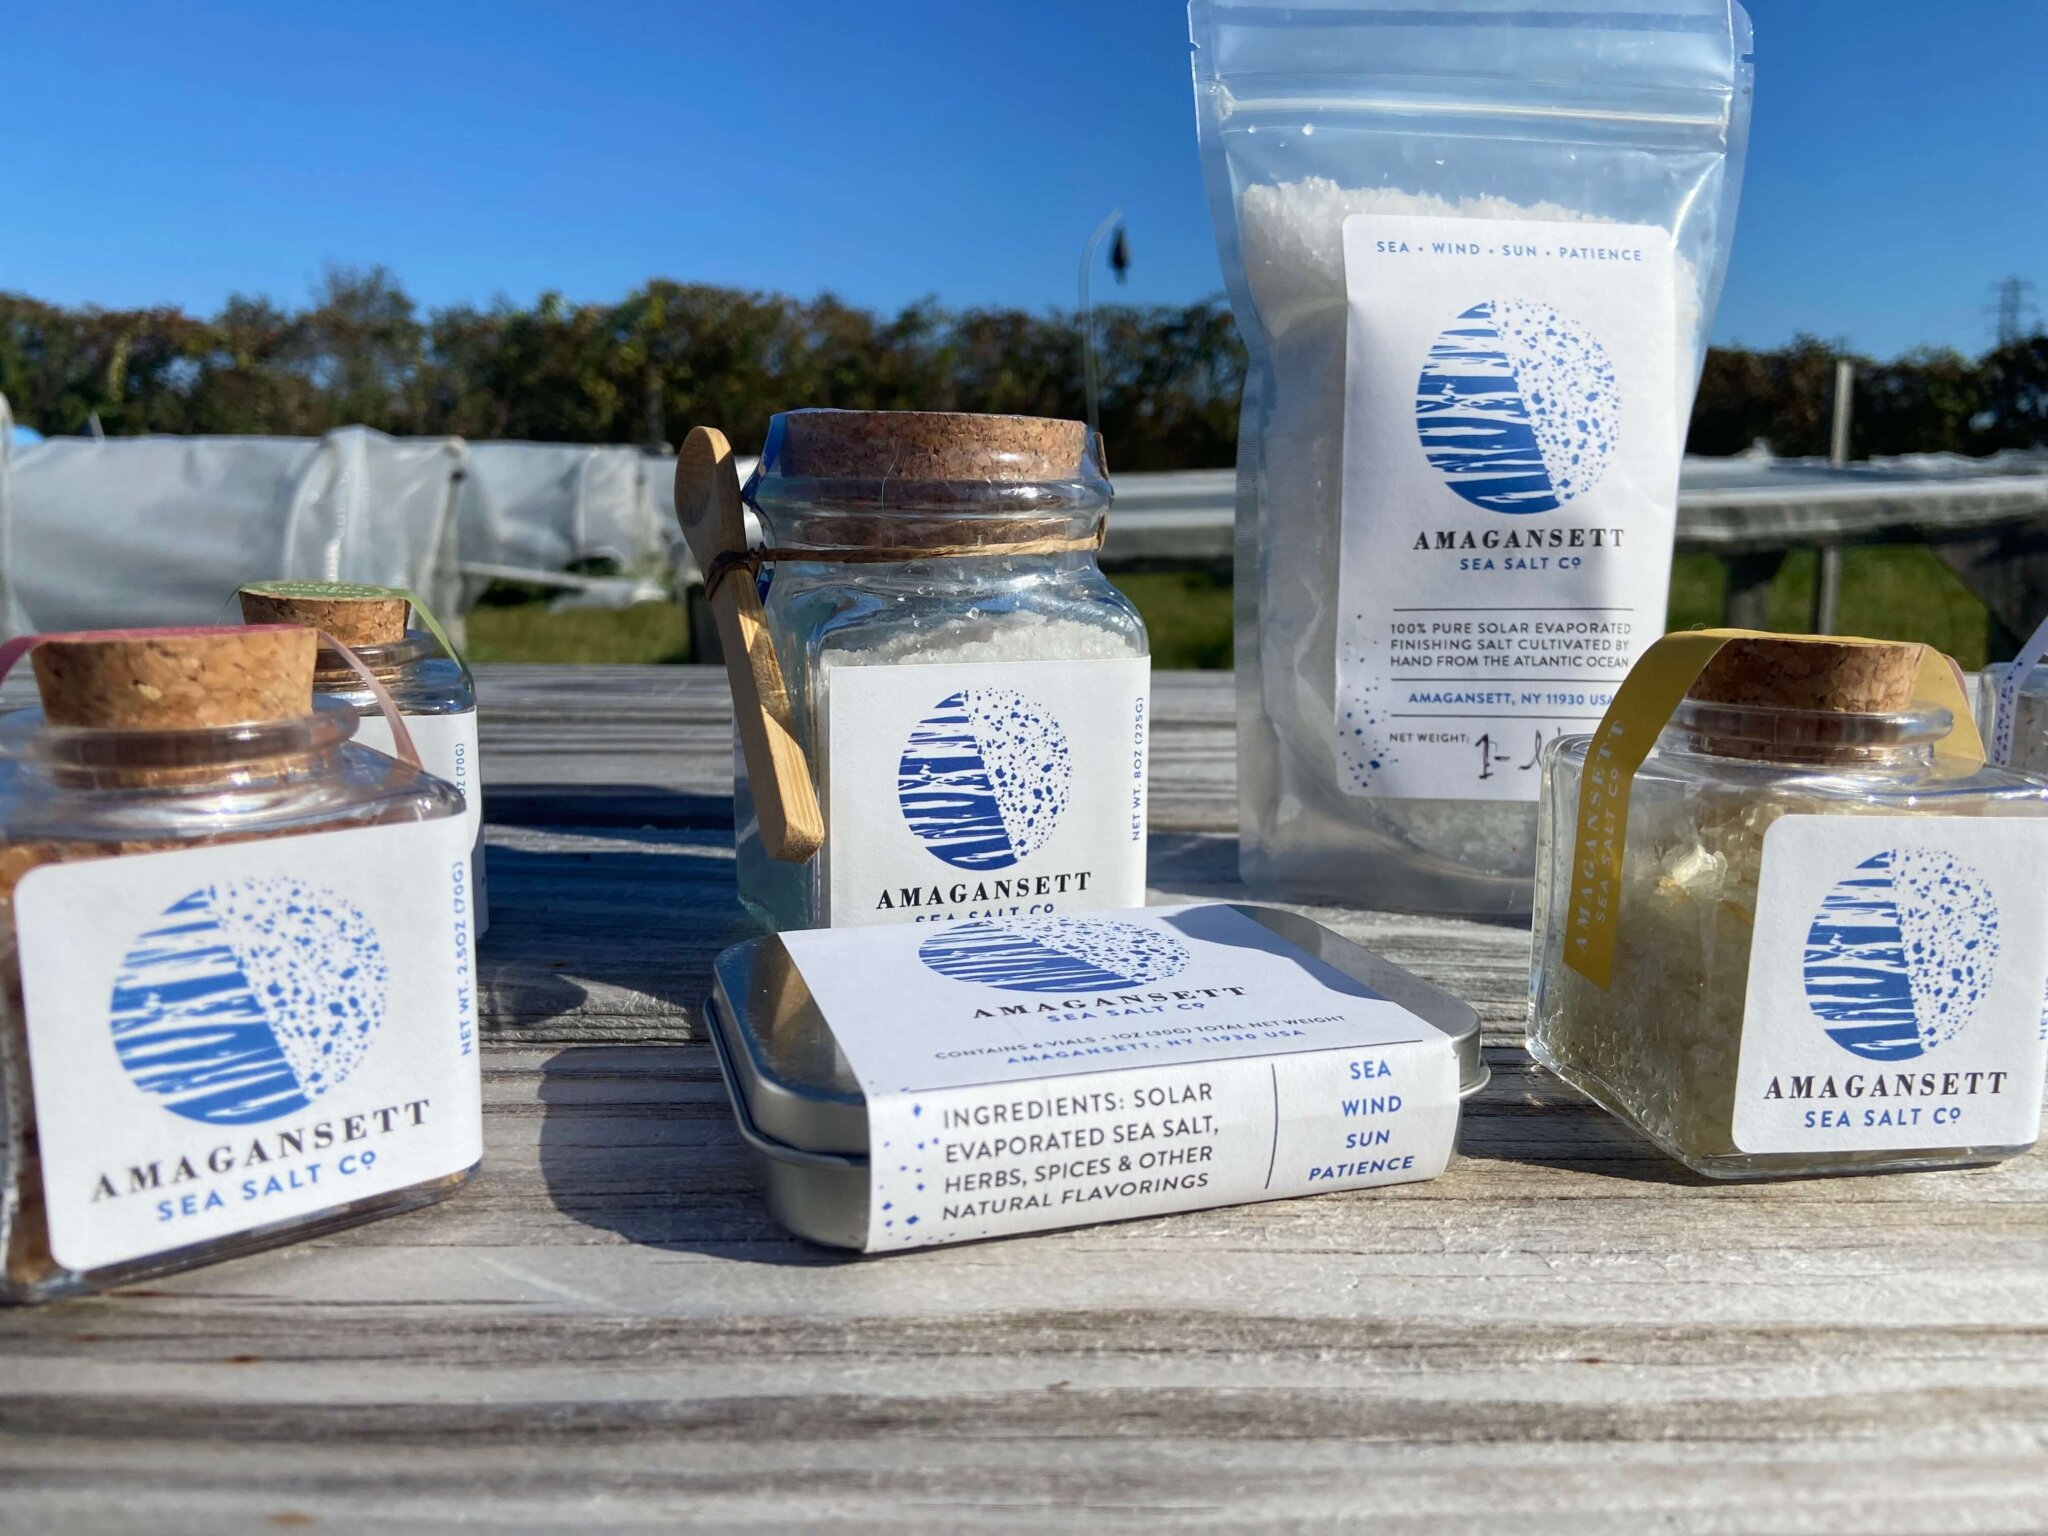 Amagansett Sea Salt Co. products